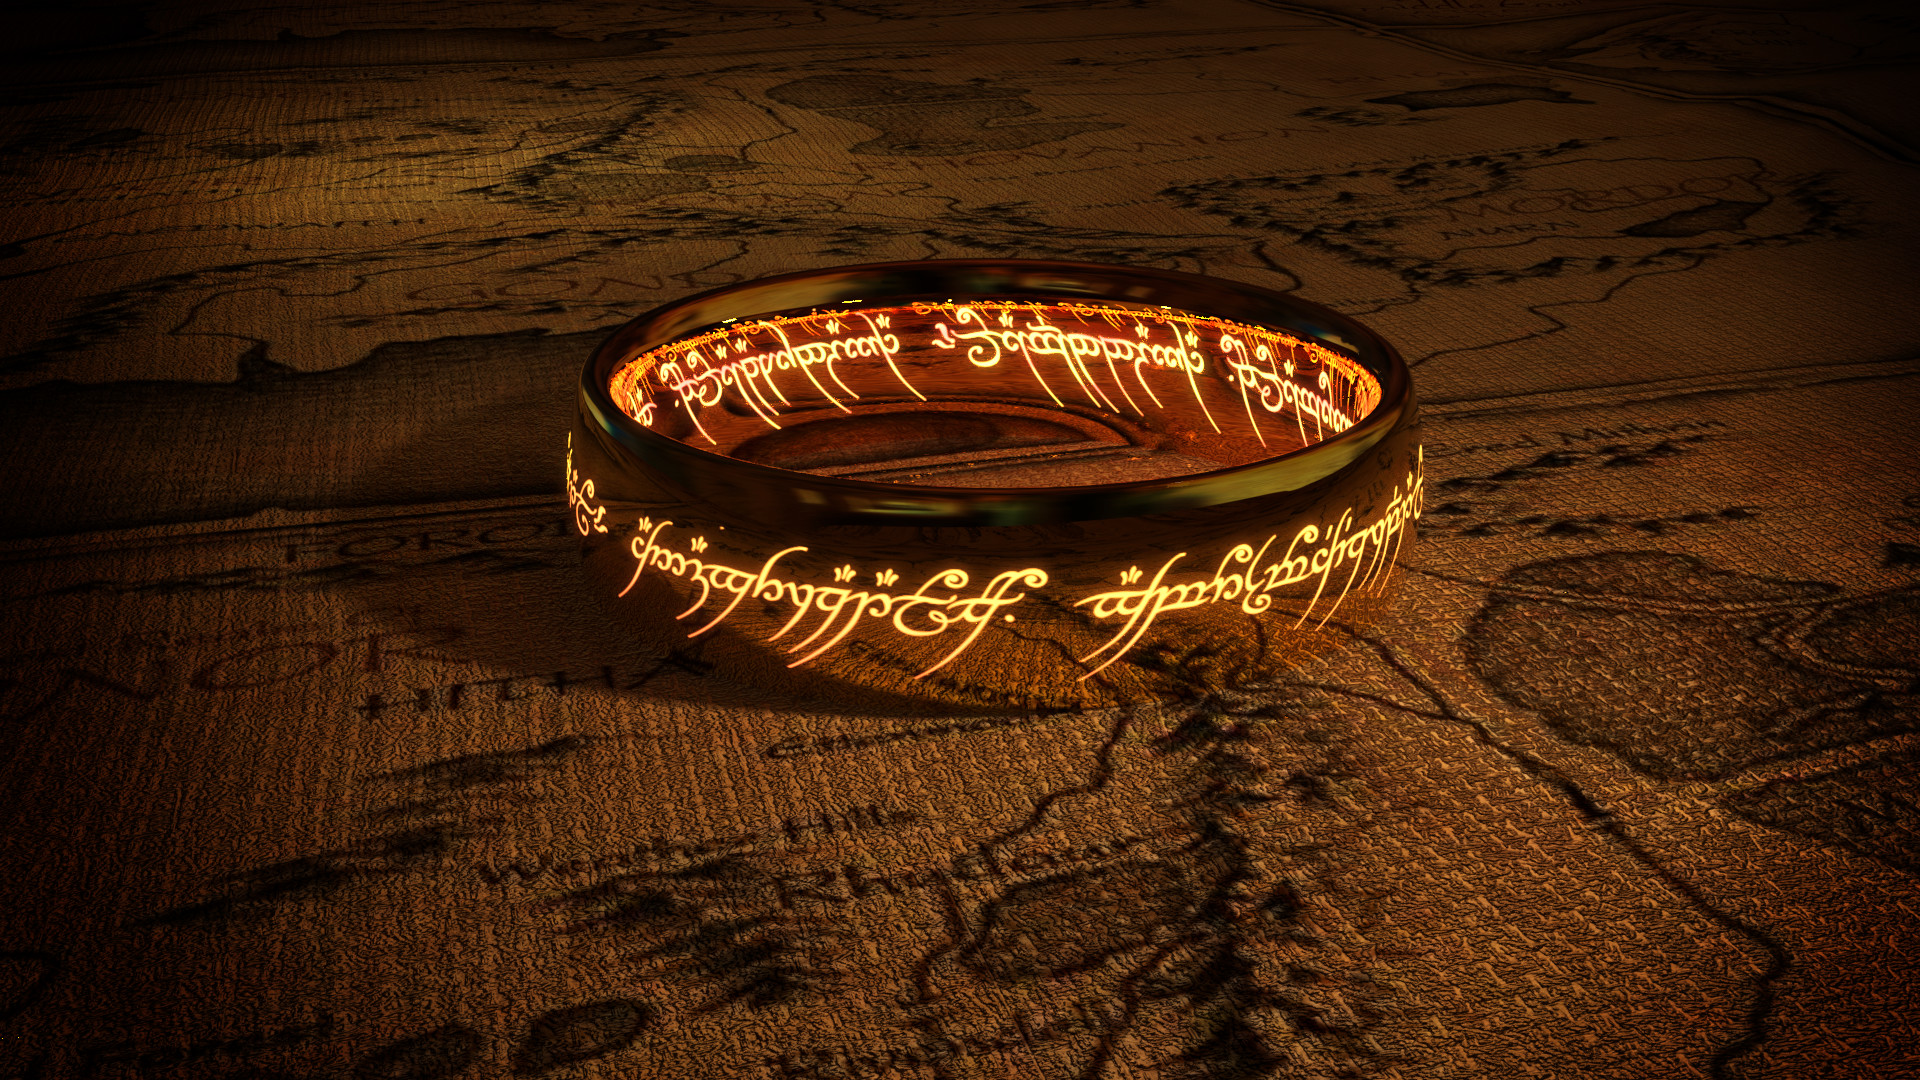 Rings of power sauron. Кольцо всевластия Властелин колец. Кольцо Саурона кольцо всевластия. Кольцо всевластия Властелин колец арт. Кольцо всевластия Фродо.